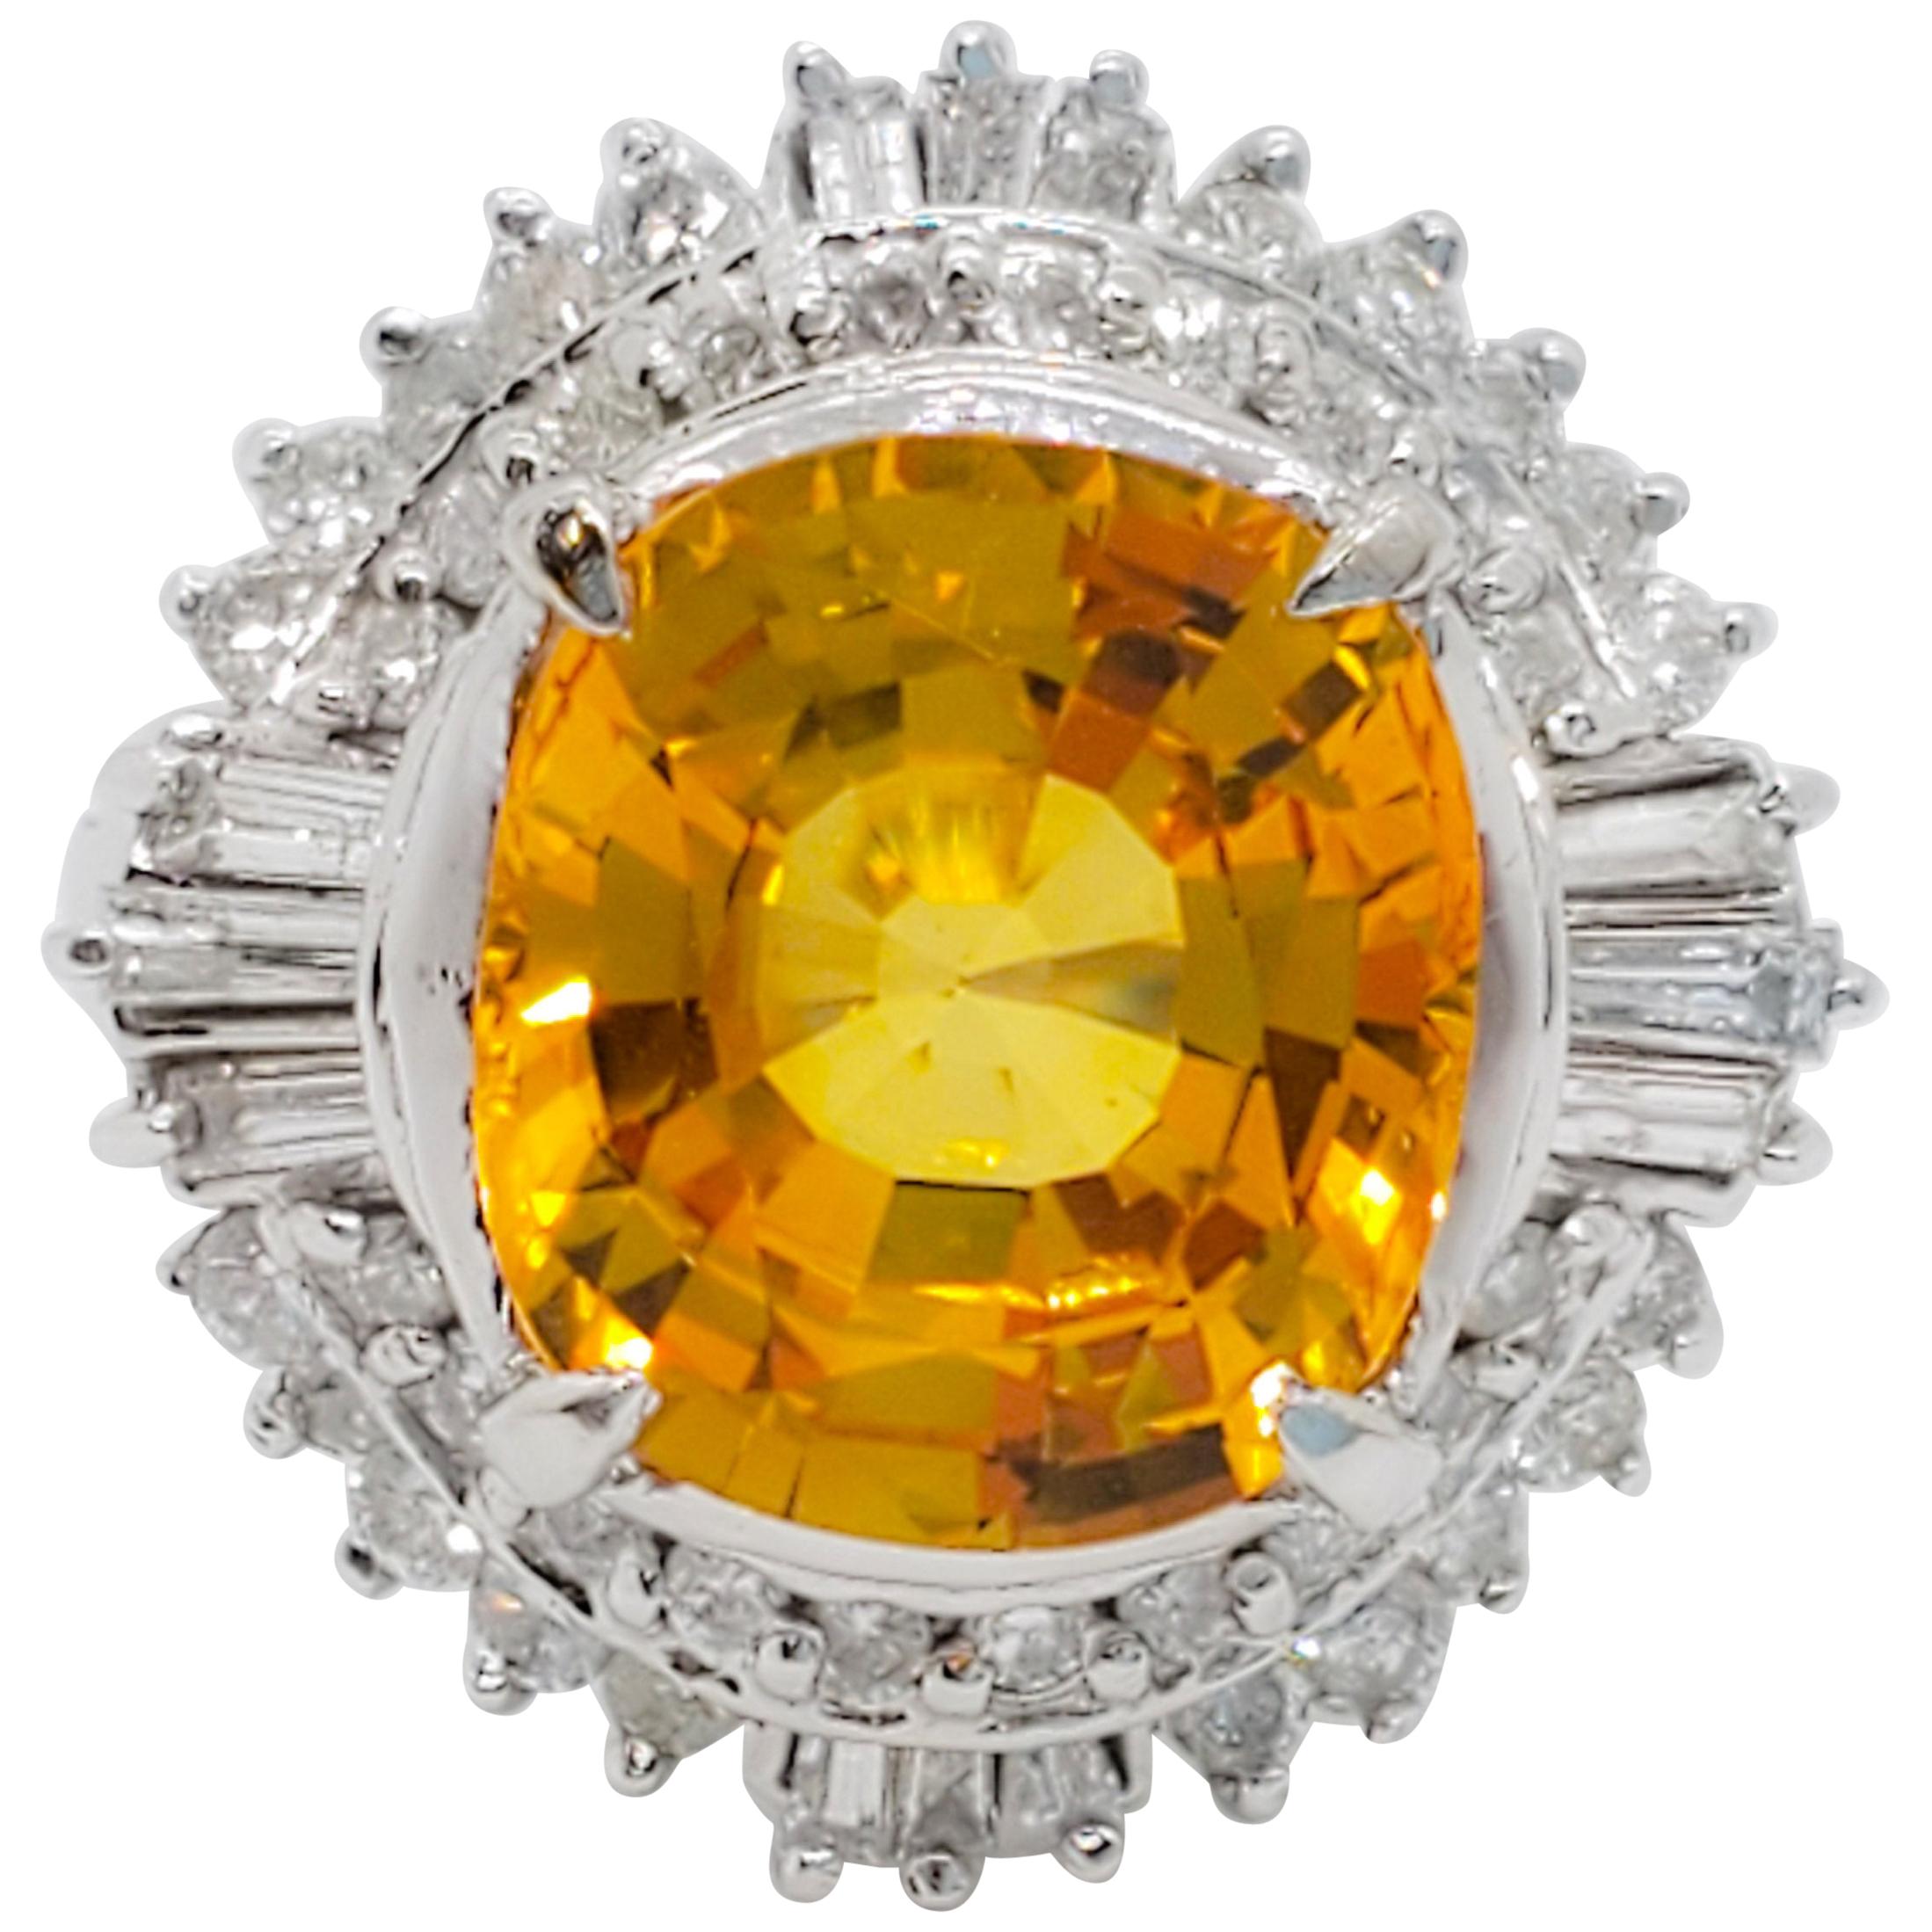 GIA Sri Lanka Orange Yellow Sapphire Cushion and White Diamond Cocktail Ring